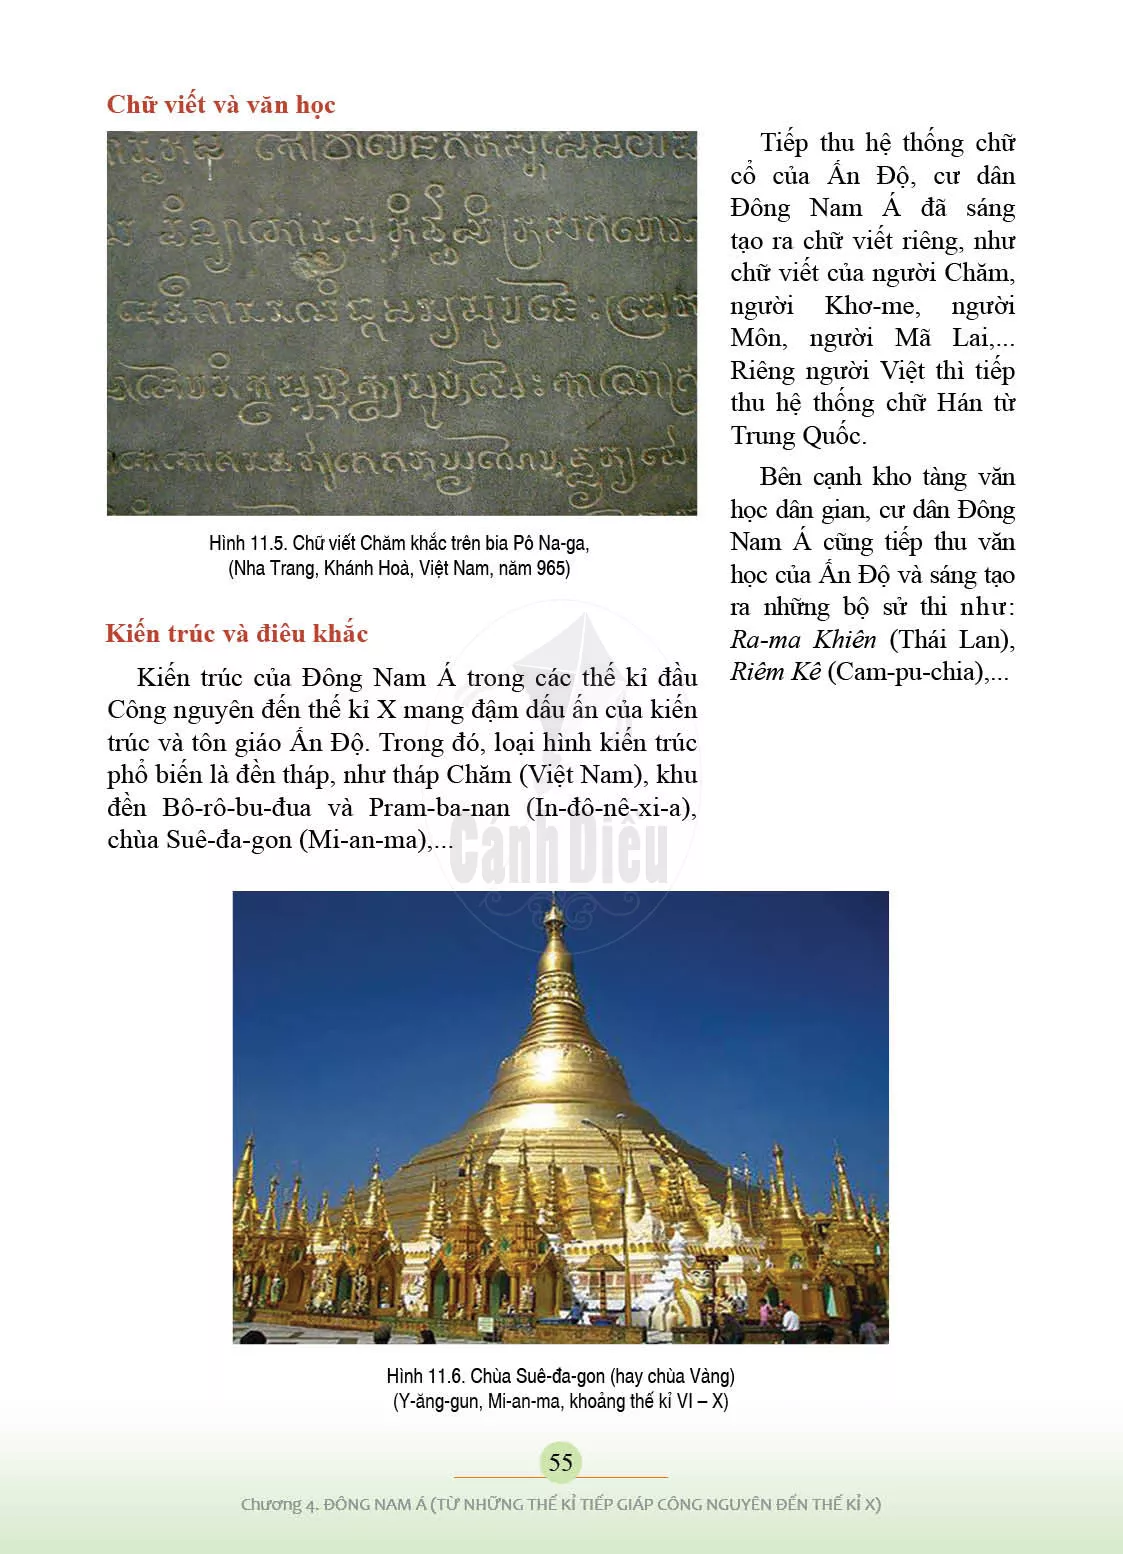 Bài 11. Giao lưu thương mại và văn hoá Đông Nam Á (từ đầu Công nguyên đến thế kỉ X)